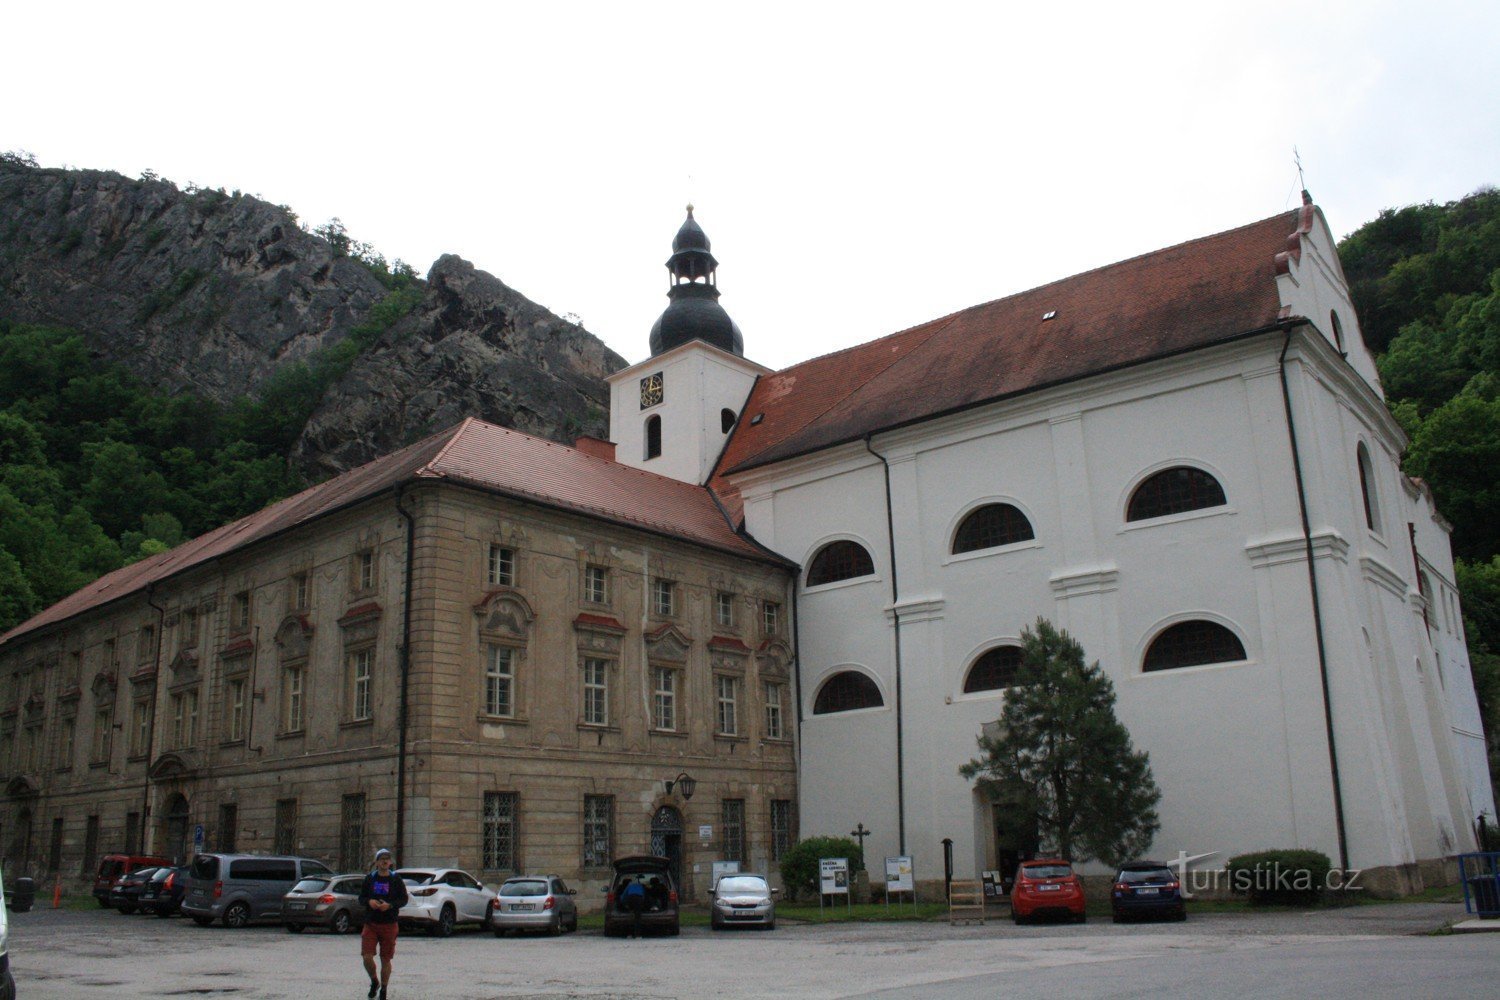 Sf. Jan pod Skalou și Biserica Nașterea Sf. Ioan Botezătorul, peștera Sf. Ivana și trăiește